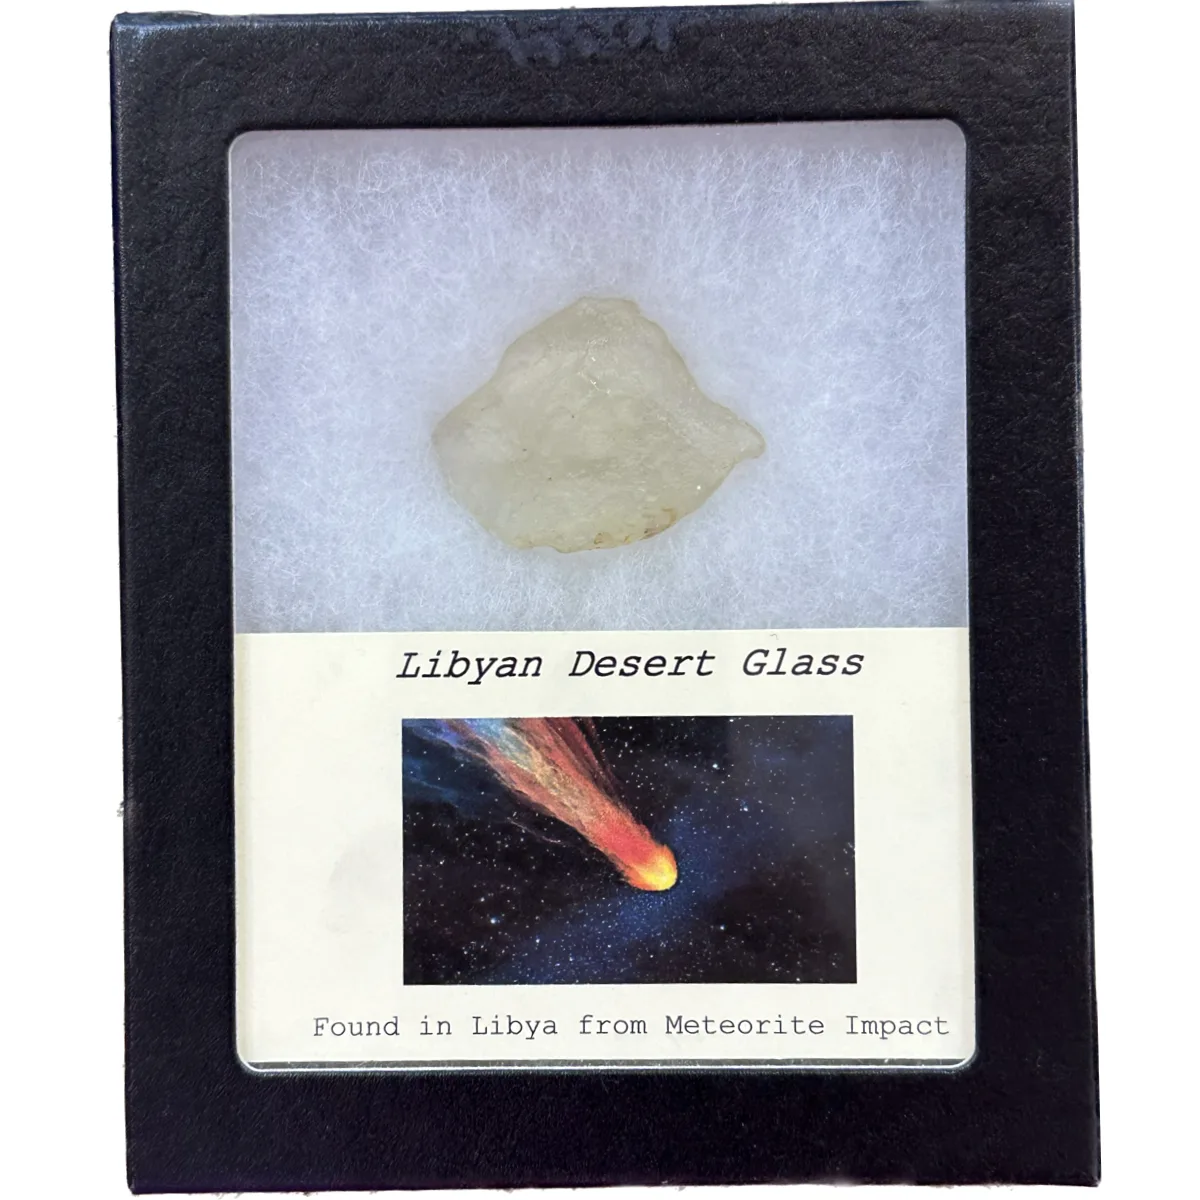 Collector Riker box – Libyan Desert Glass Prehistoric Online